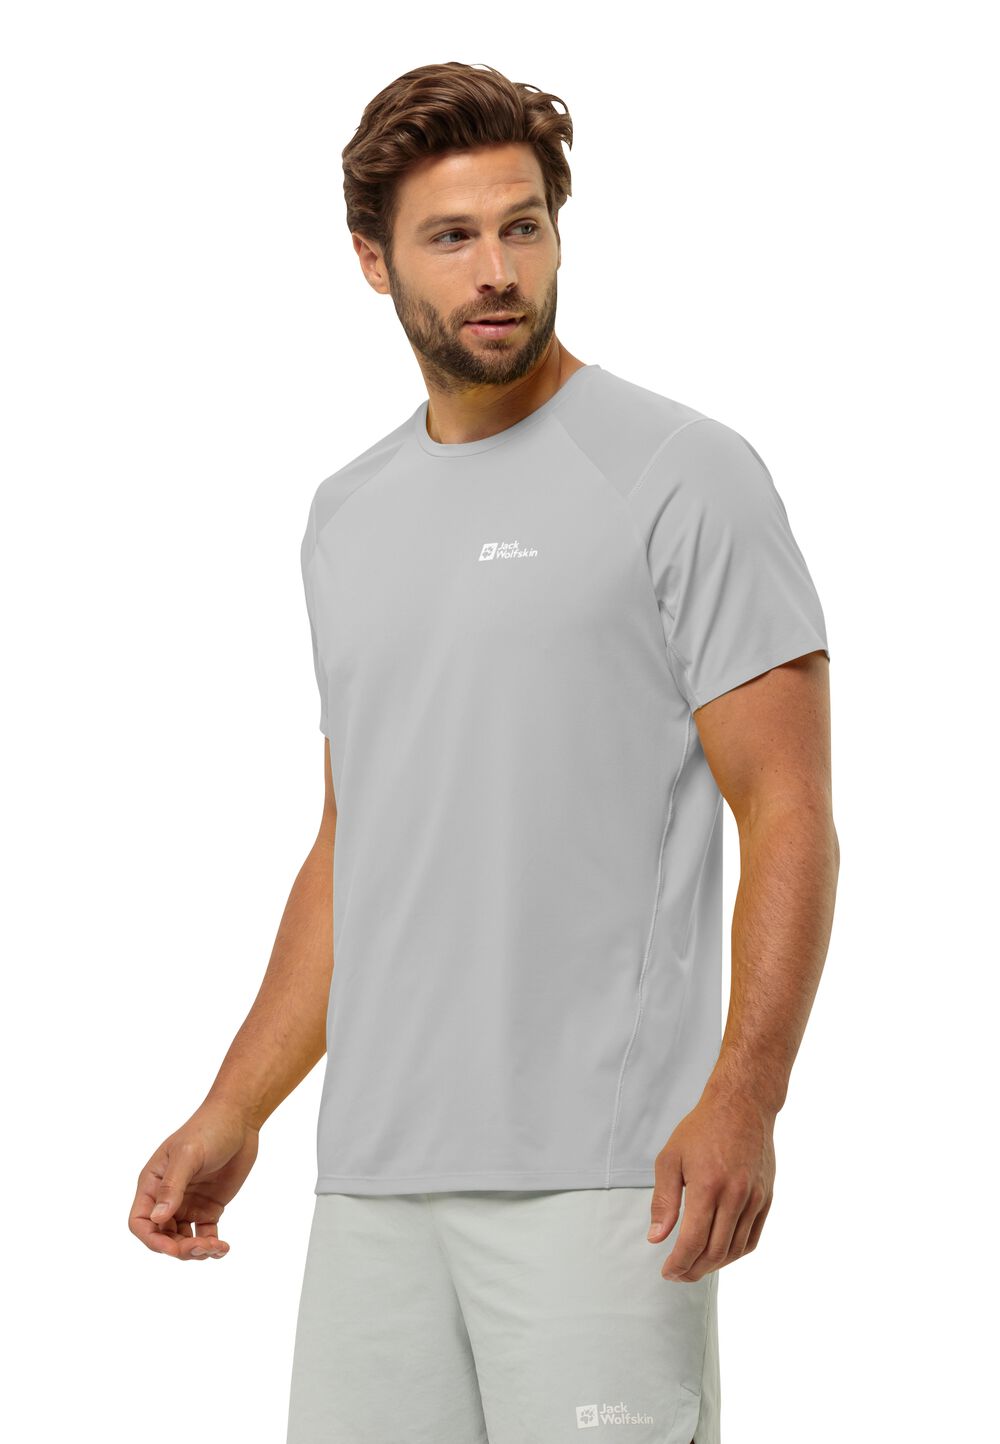 Jack Wolfskin Prelight Chill T-Shirt Men Functioneel shirt Heren XL grijs cool grey